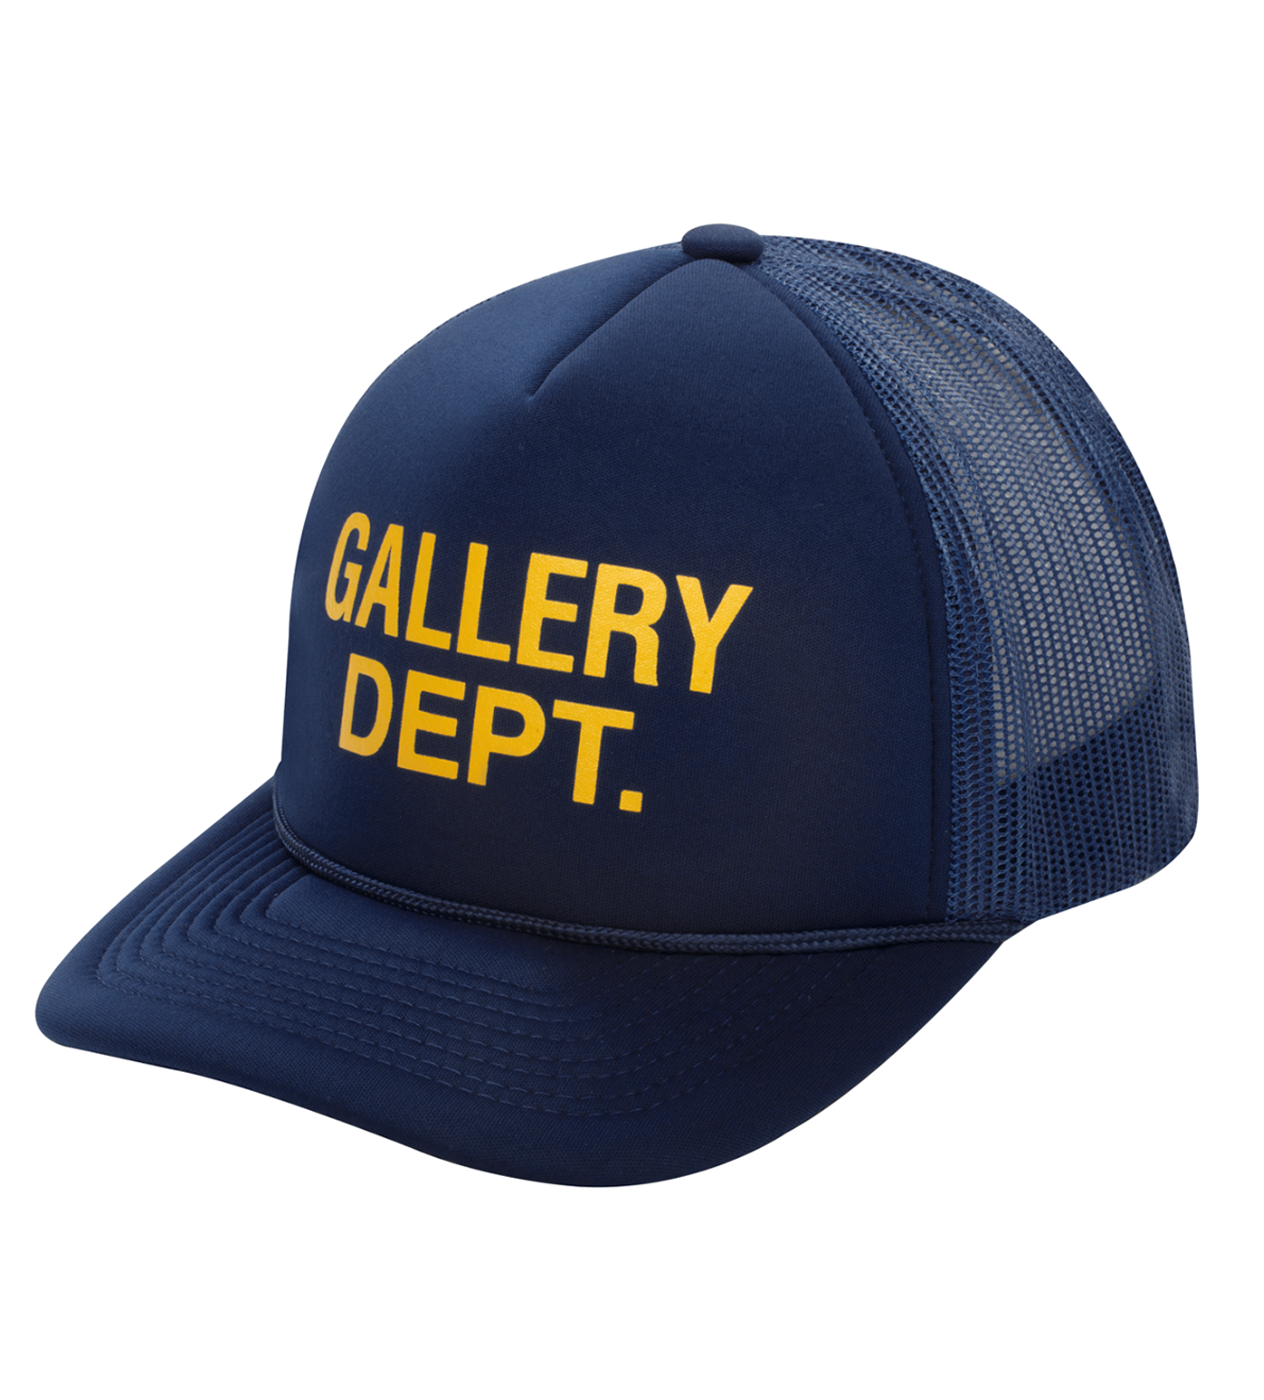 Gallery Dept. Trucker Cap Navy